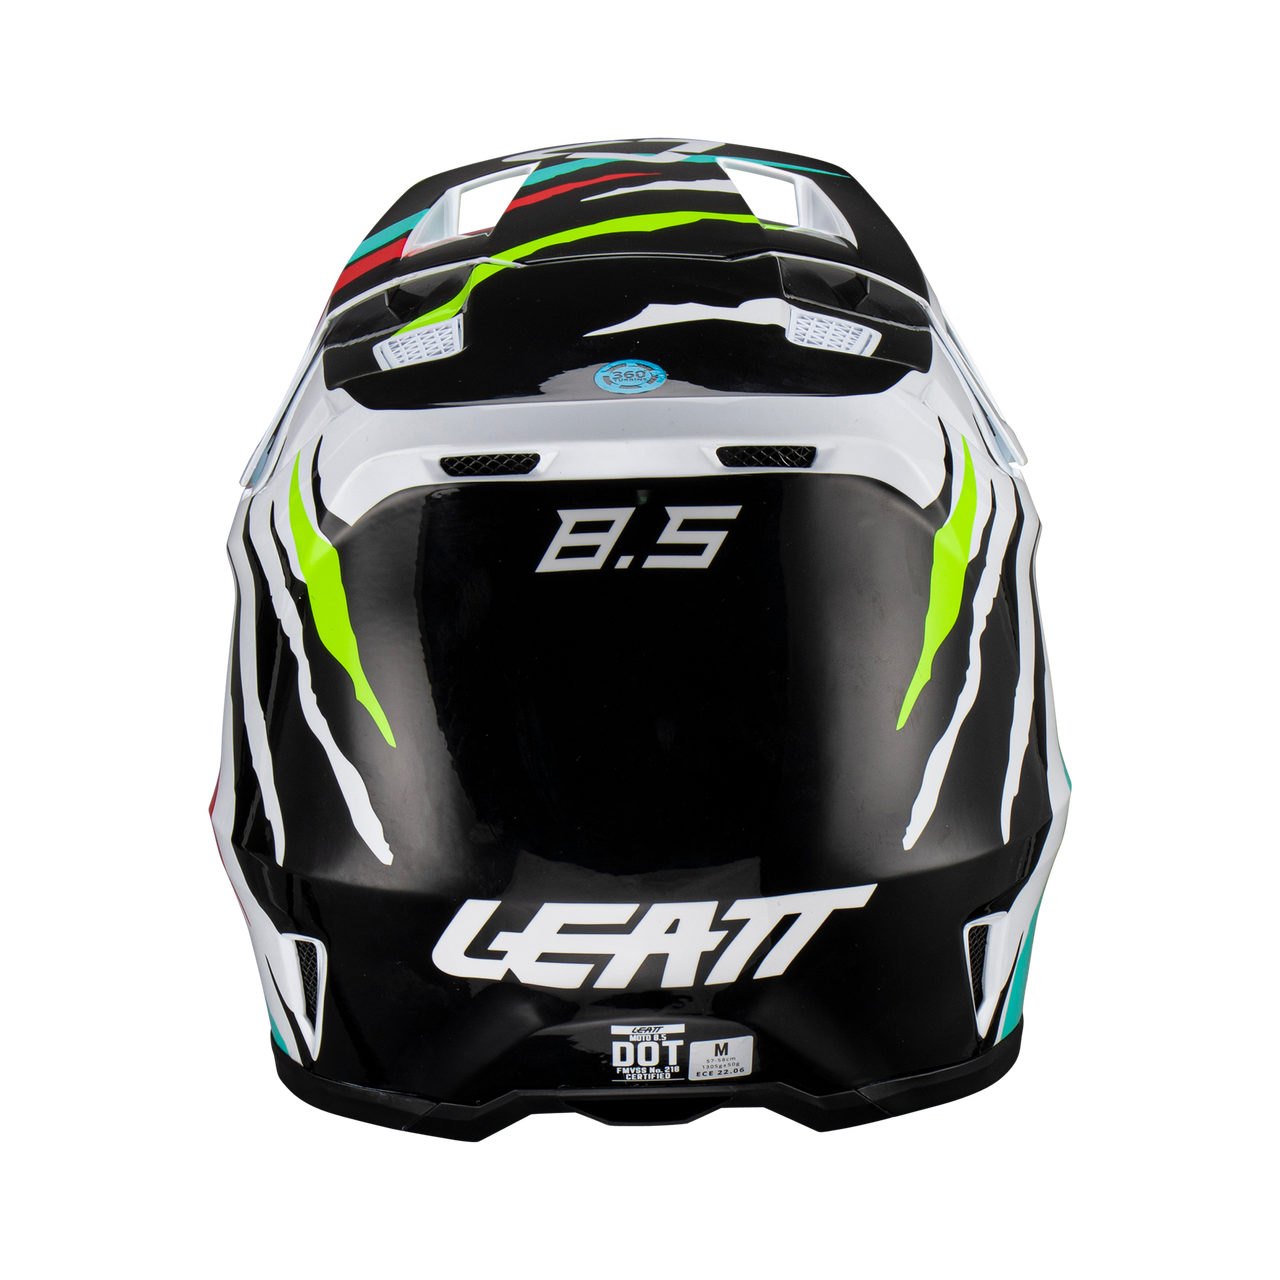 Leatt Moto 8.5 V23 Helmet Tiger